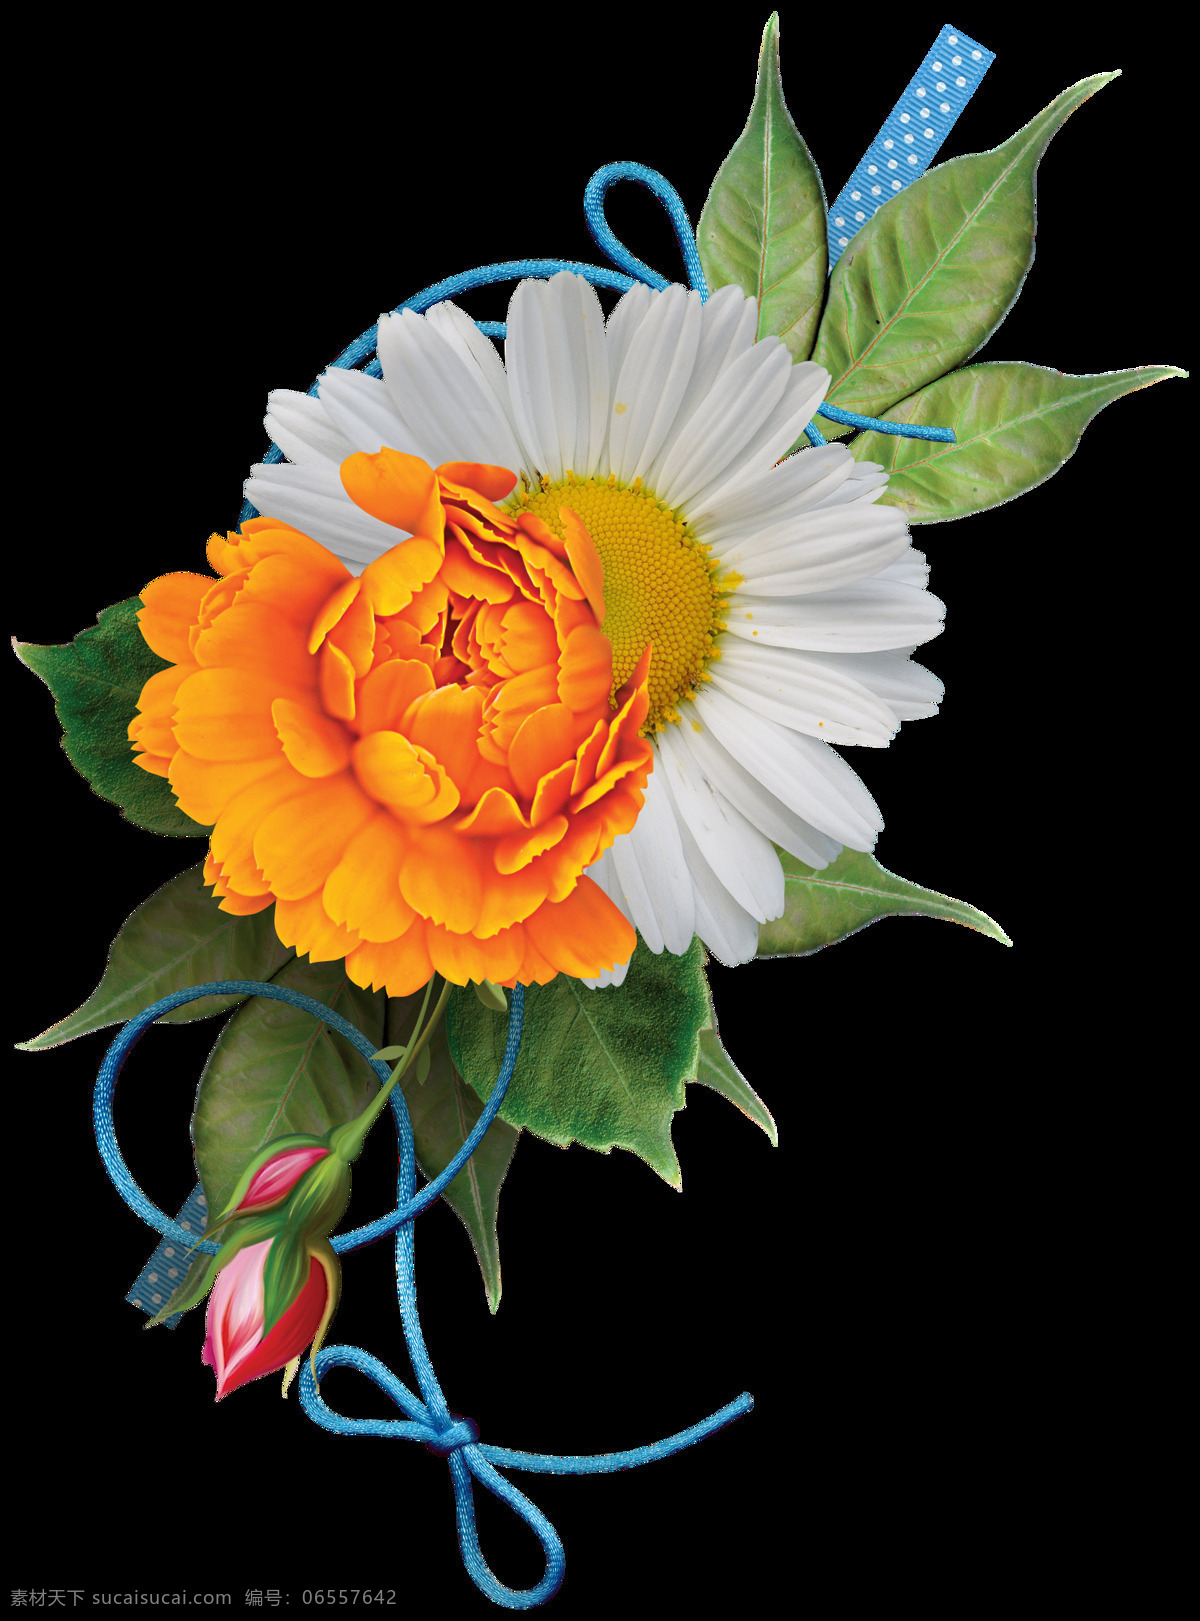 艳丽 明亮 橙色 花朵 花束 实物 元素 橙色花朵 蓝色绳子 绿叶 美丽花朵 植物